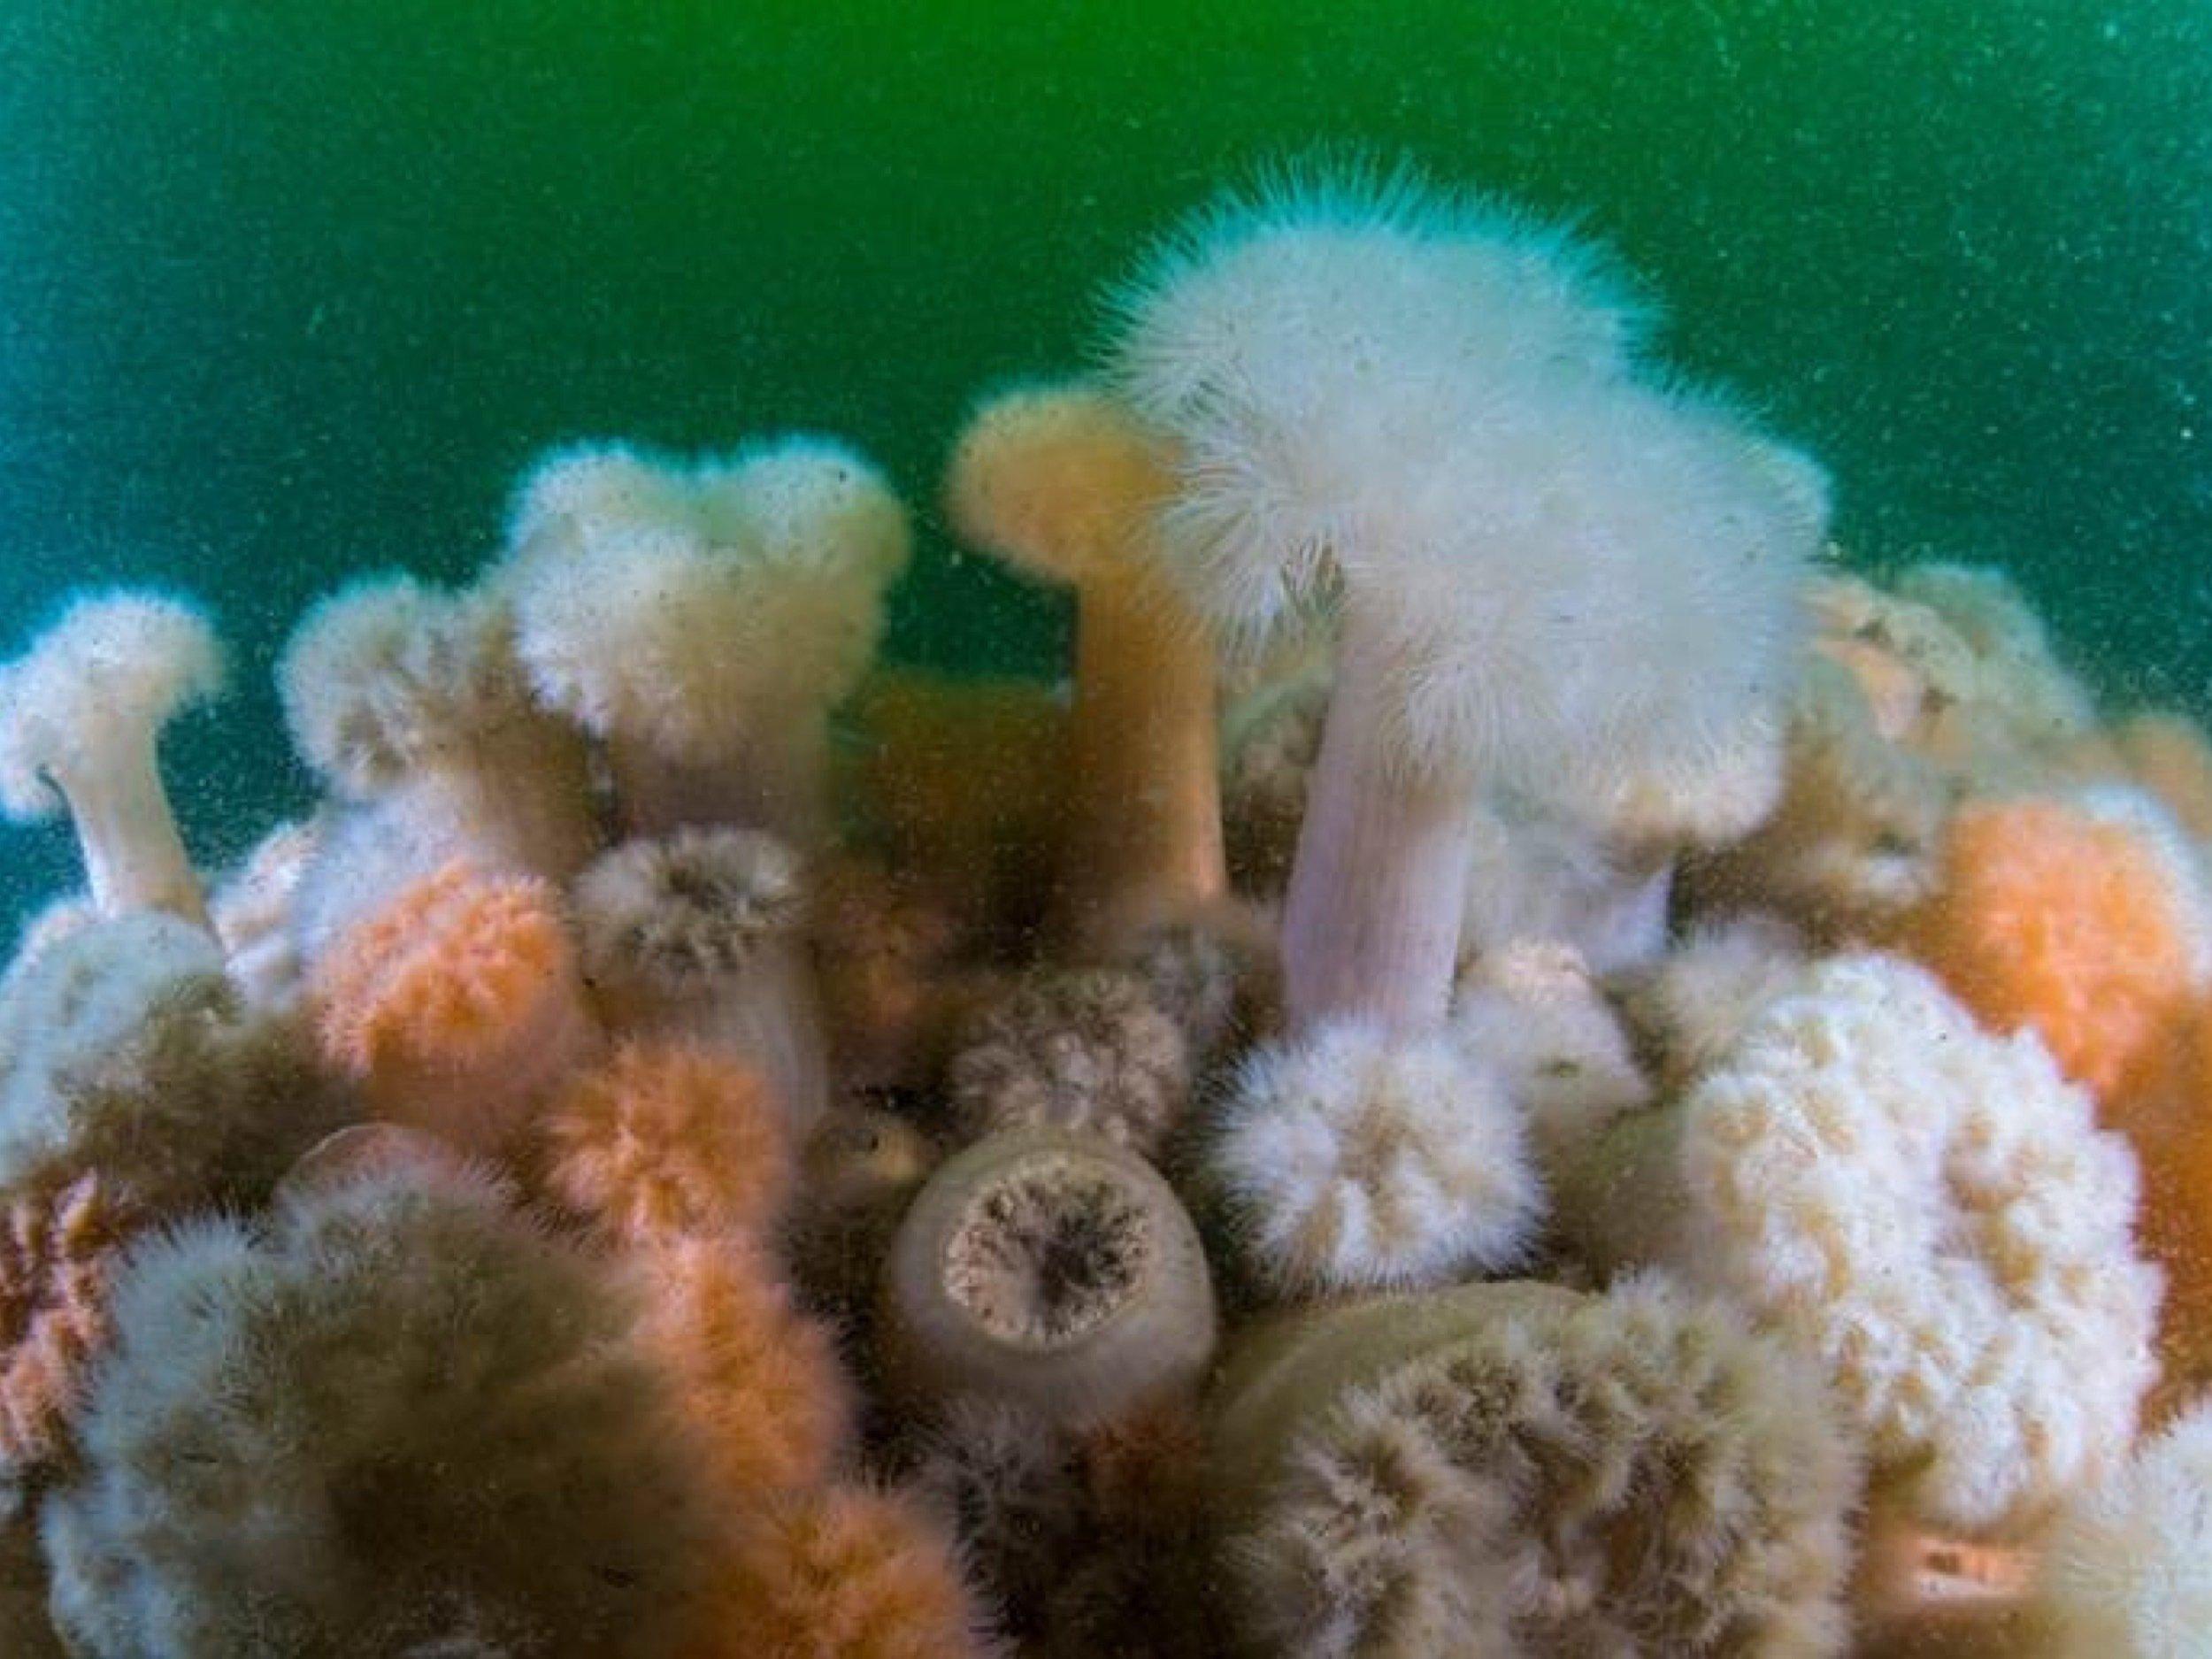 Anemonen und andere Weichtiere in bunter Vielfalt in trübem Nordseewasser.